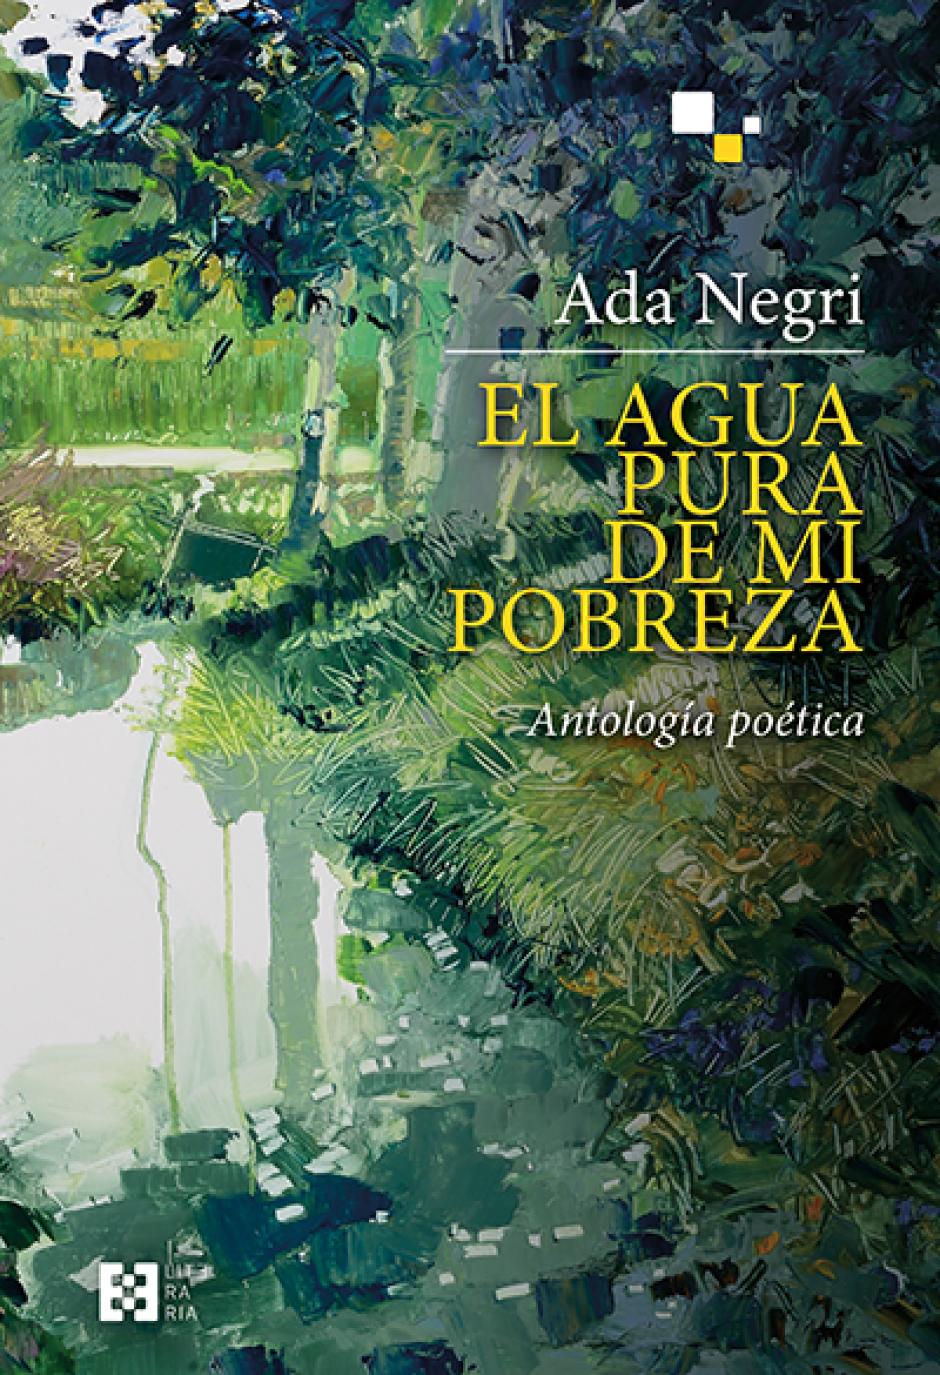 El agua pura de mi pobreza. Antología de poemas de Ada Negri. (Editorial Encuentro)